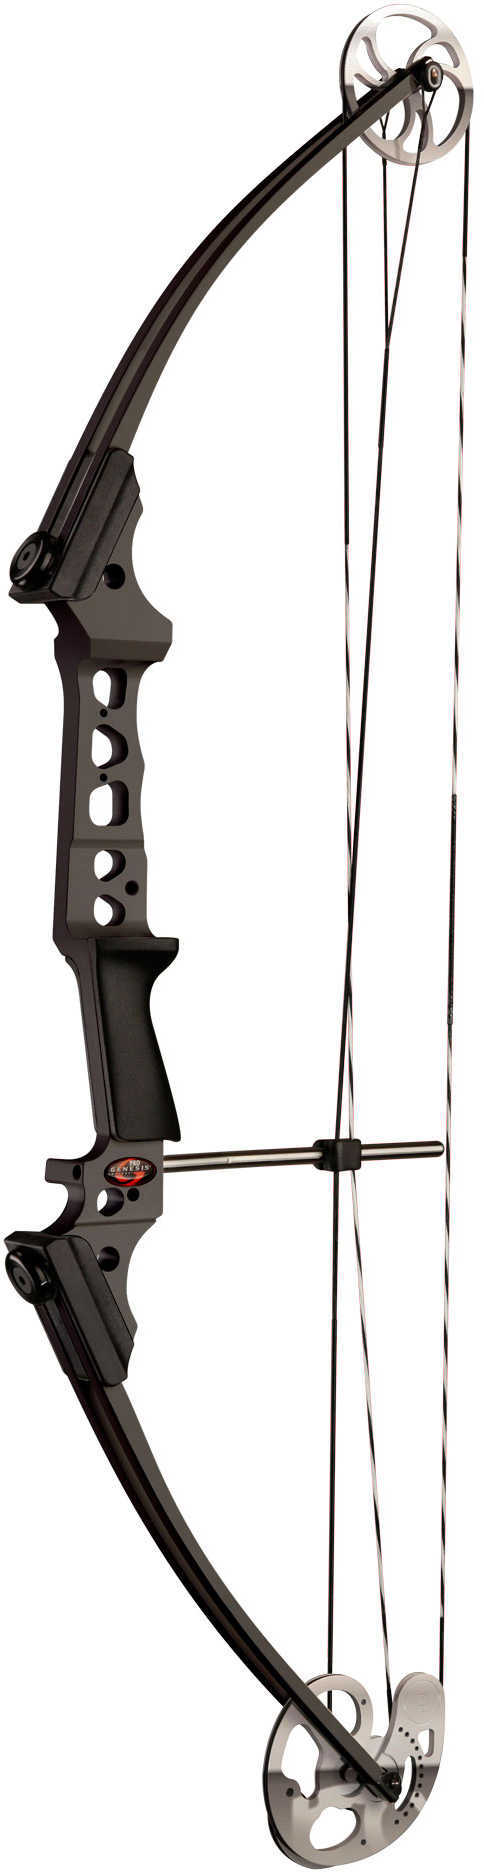 Genesis Pro Bow Black RH Model: 10492A